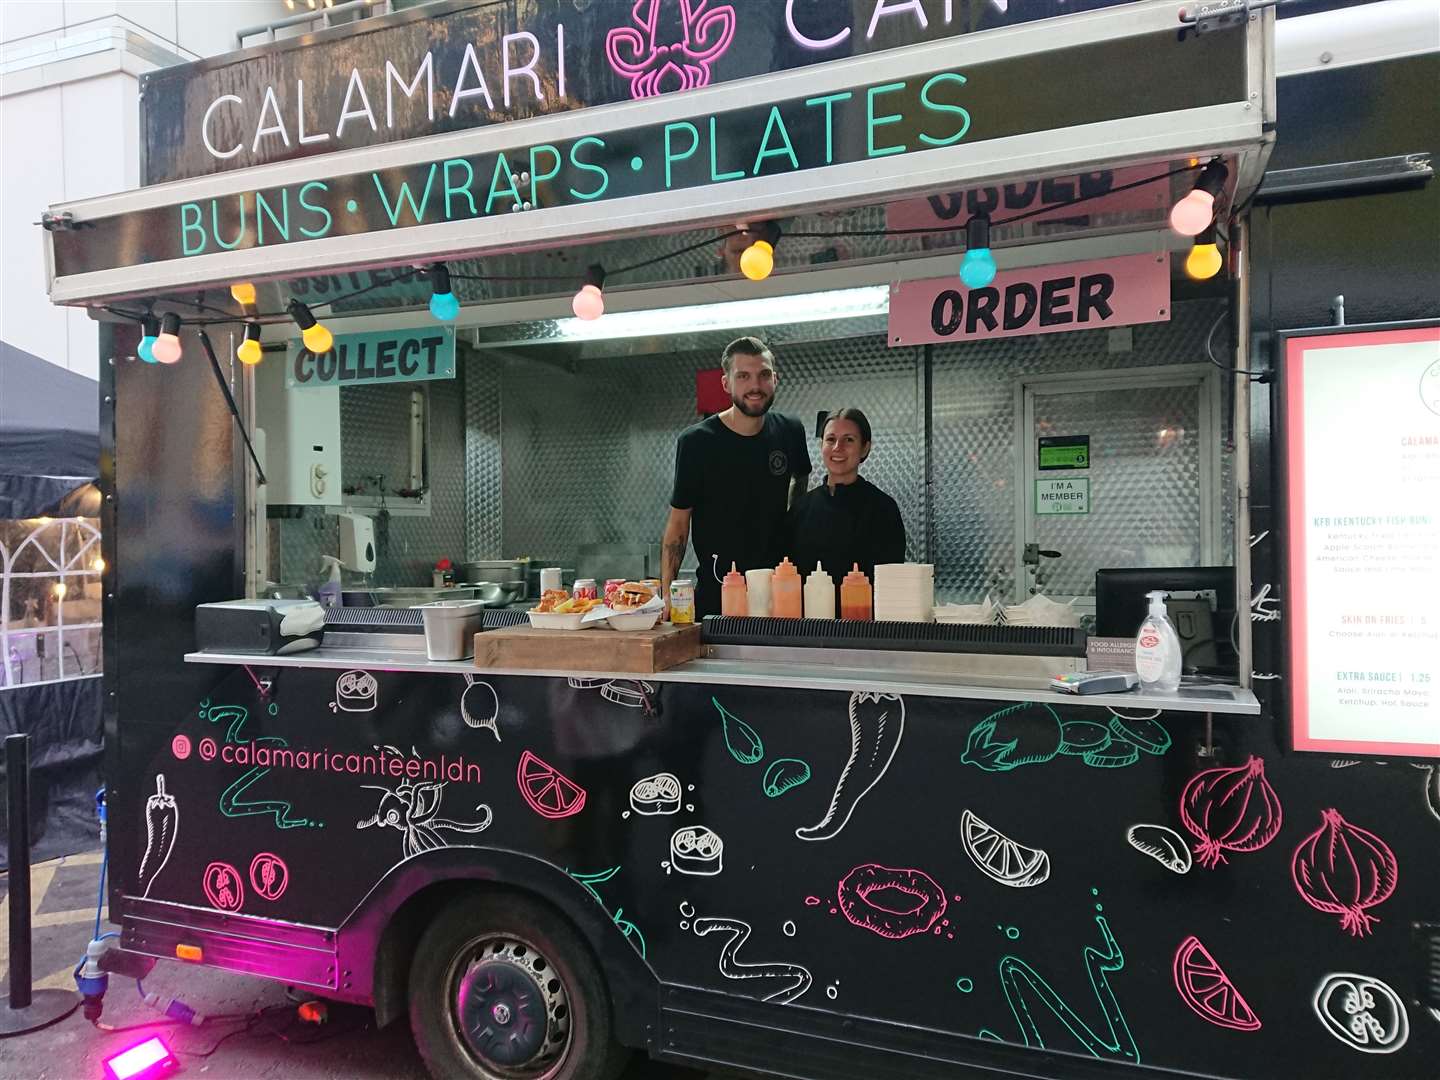 The Calamari Canteen stall